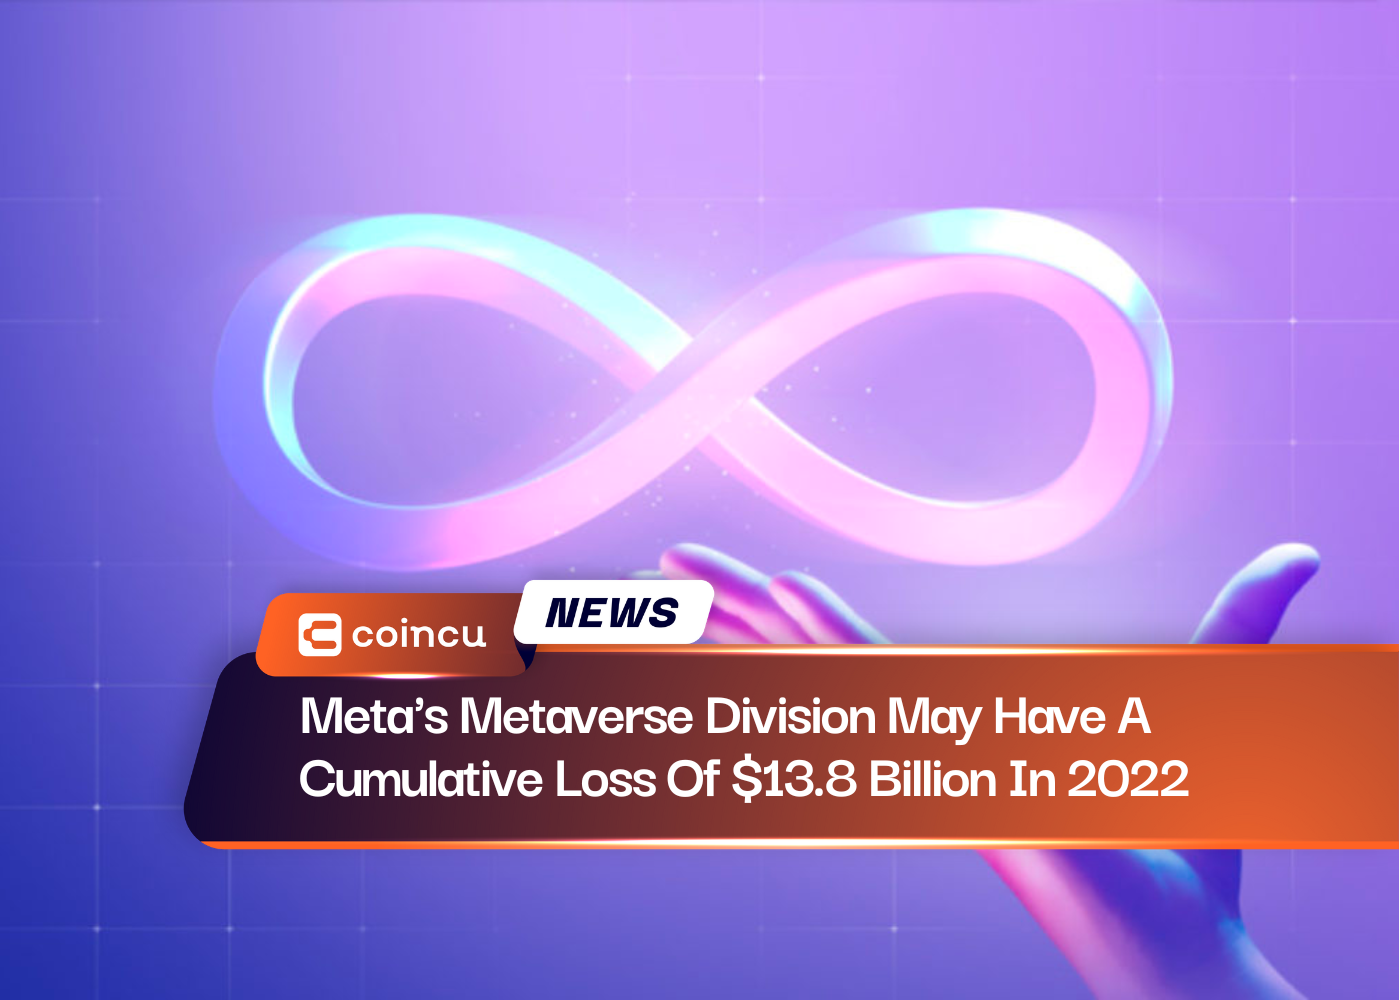 A divisão metaverso da Meta pode ter uma perda cumulativa de US$ 13.8 bilhões em 2022